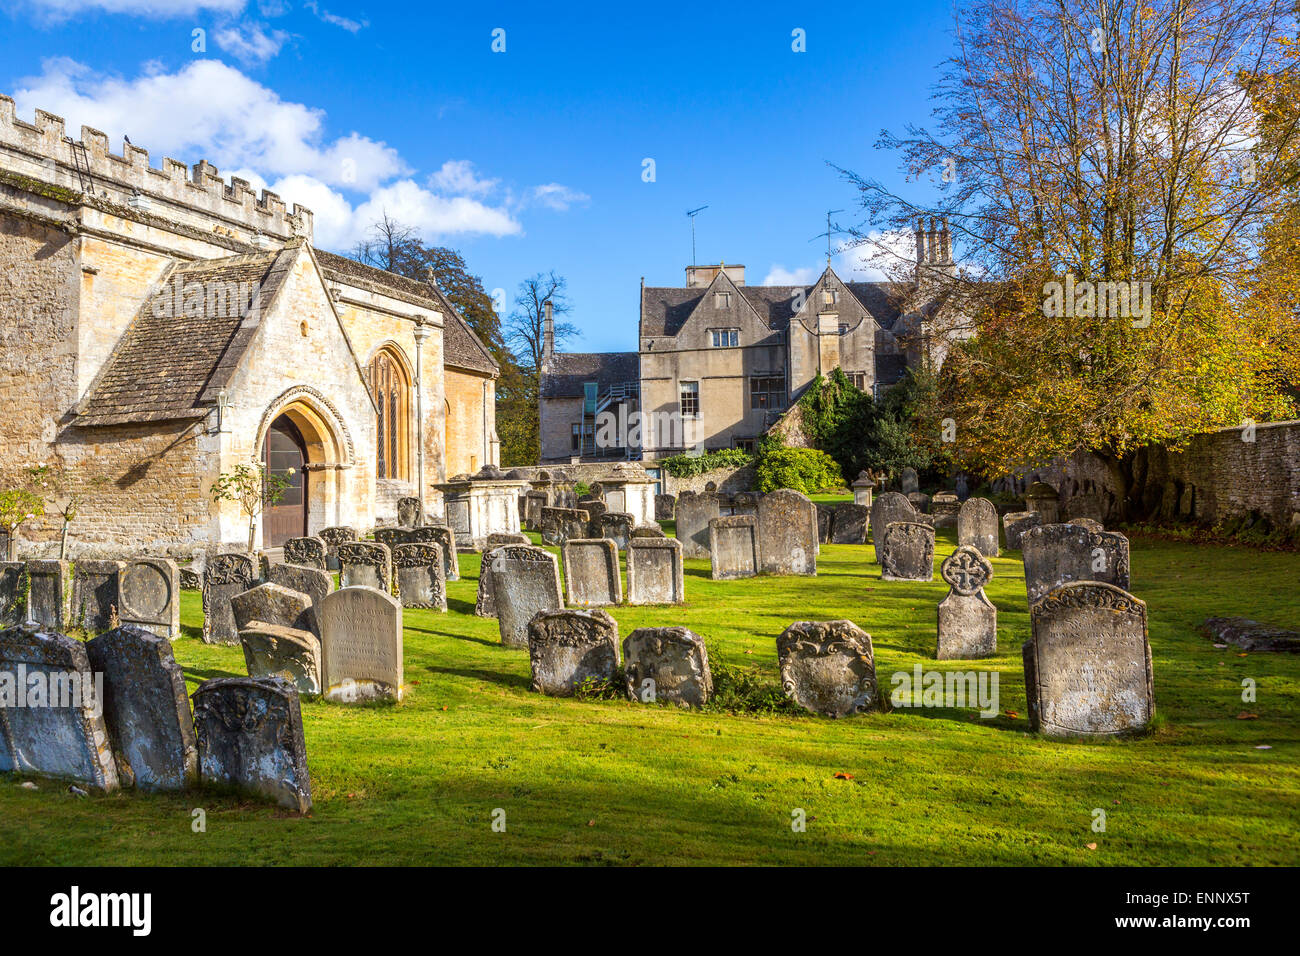 L'église St Mary de cimetière, Bibury, les Cotswolds, Gloucestershire, Angleterre, Royaume-Uni. Banque D'Images